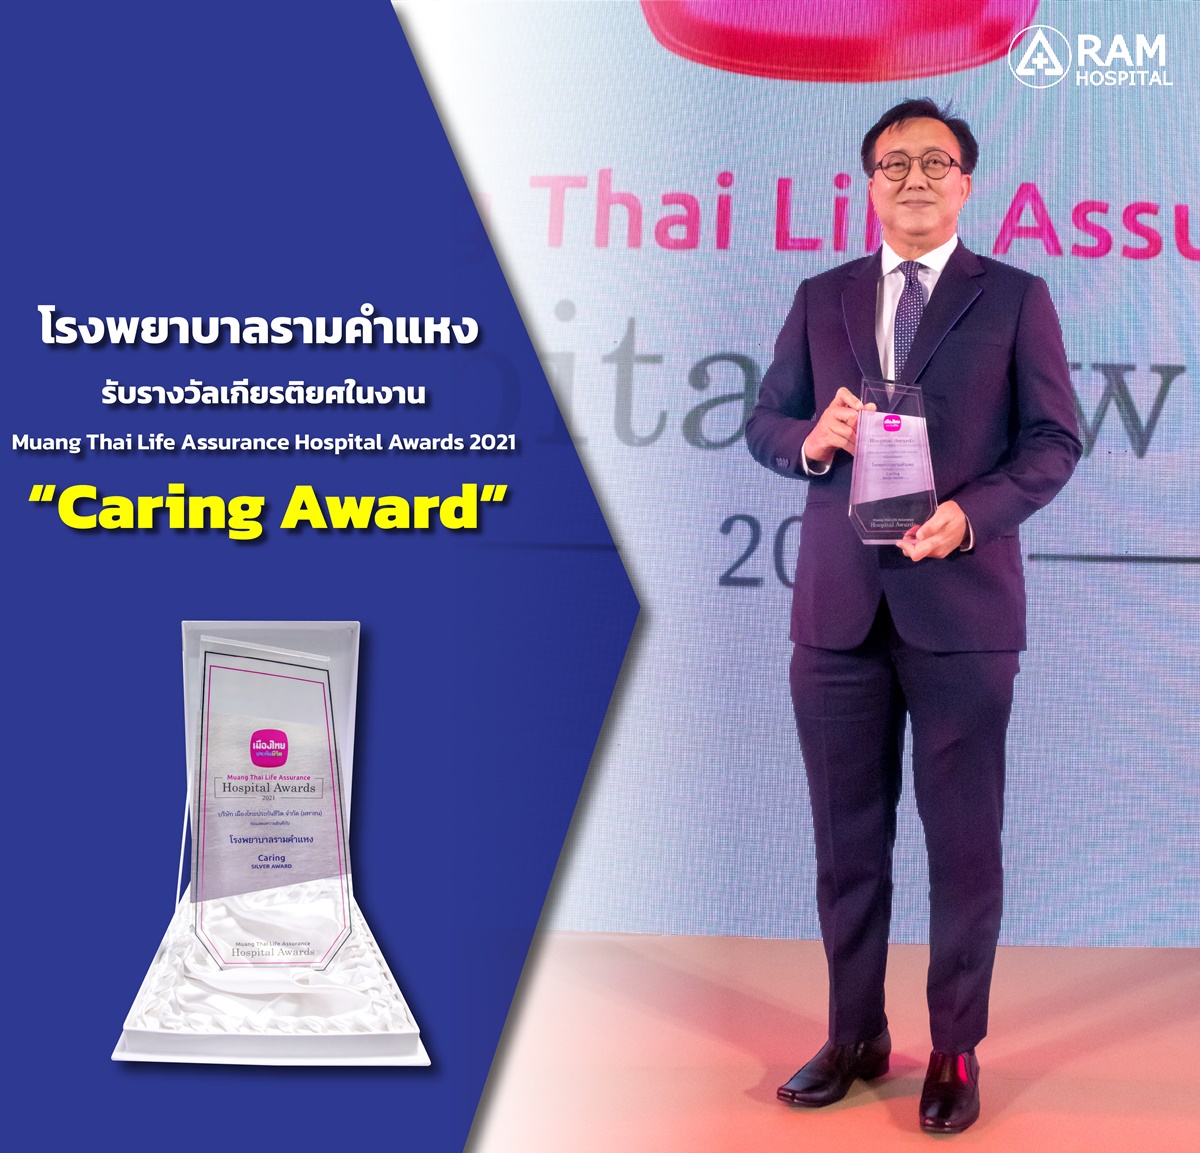 โรงพยาบาลรามคำแหง รับรางวัลเกียรติยศในงาน Muang Thai Life Assurance Hospital Awards 2021